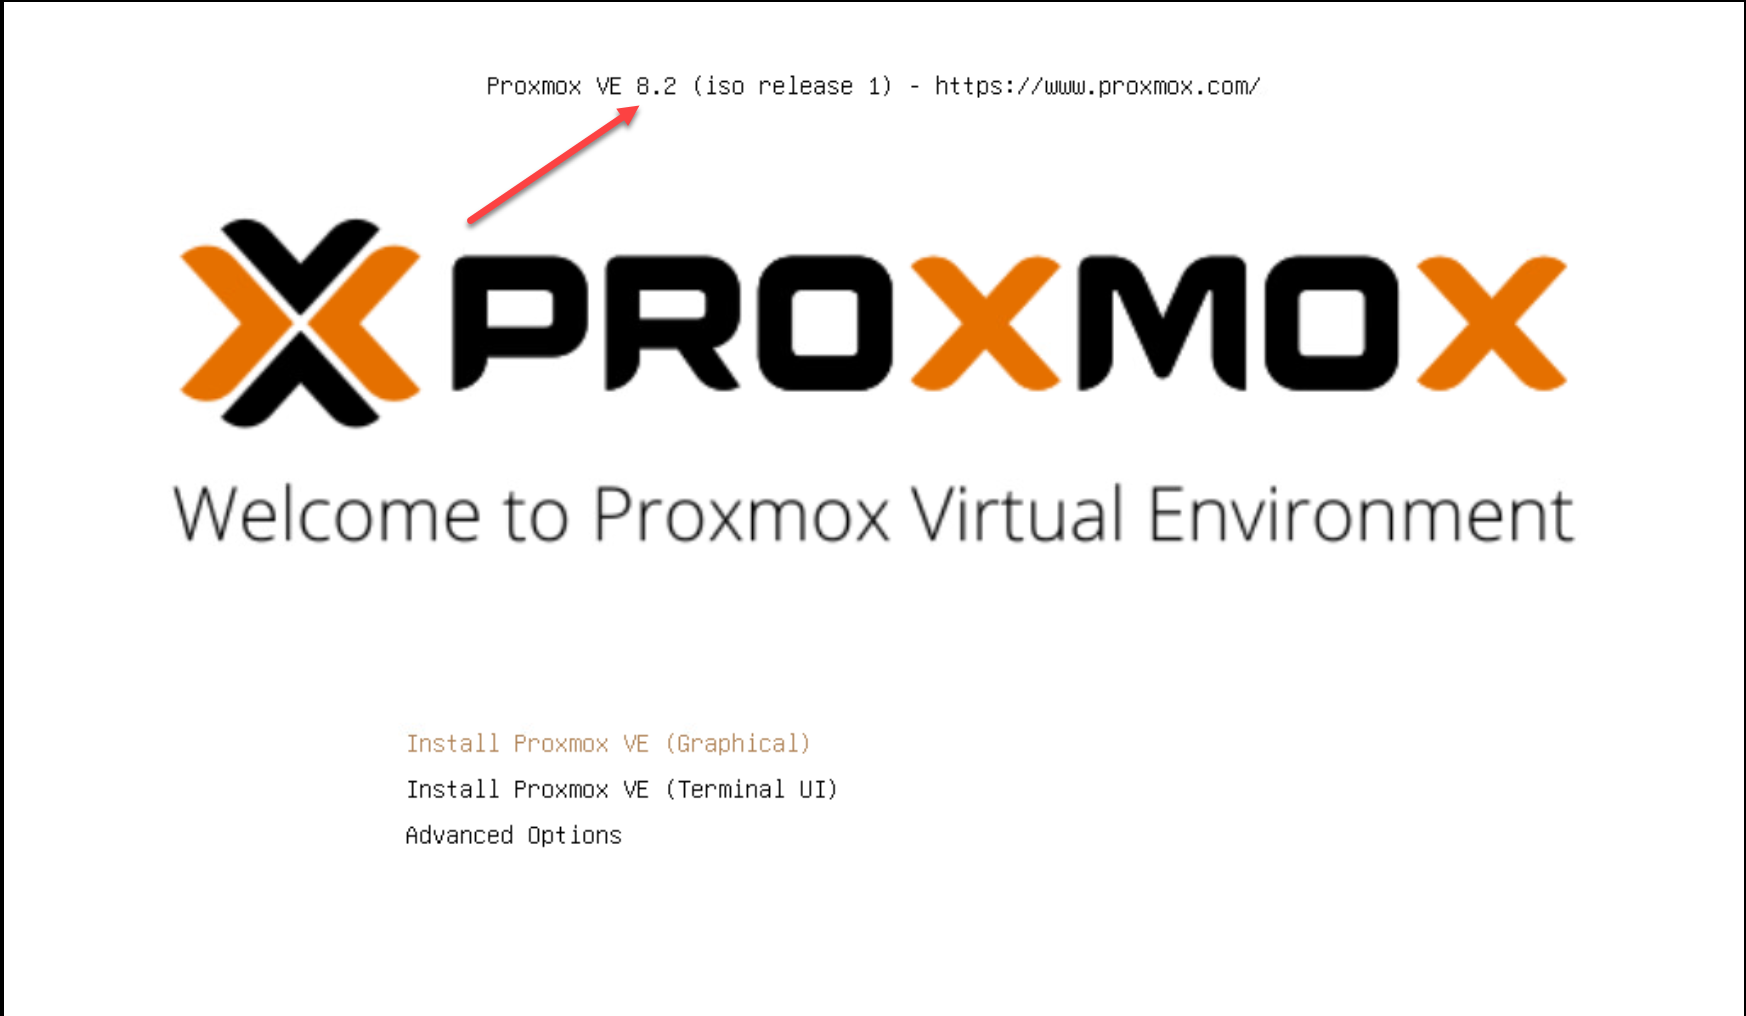 Instalando o proxmox 8.2